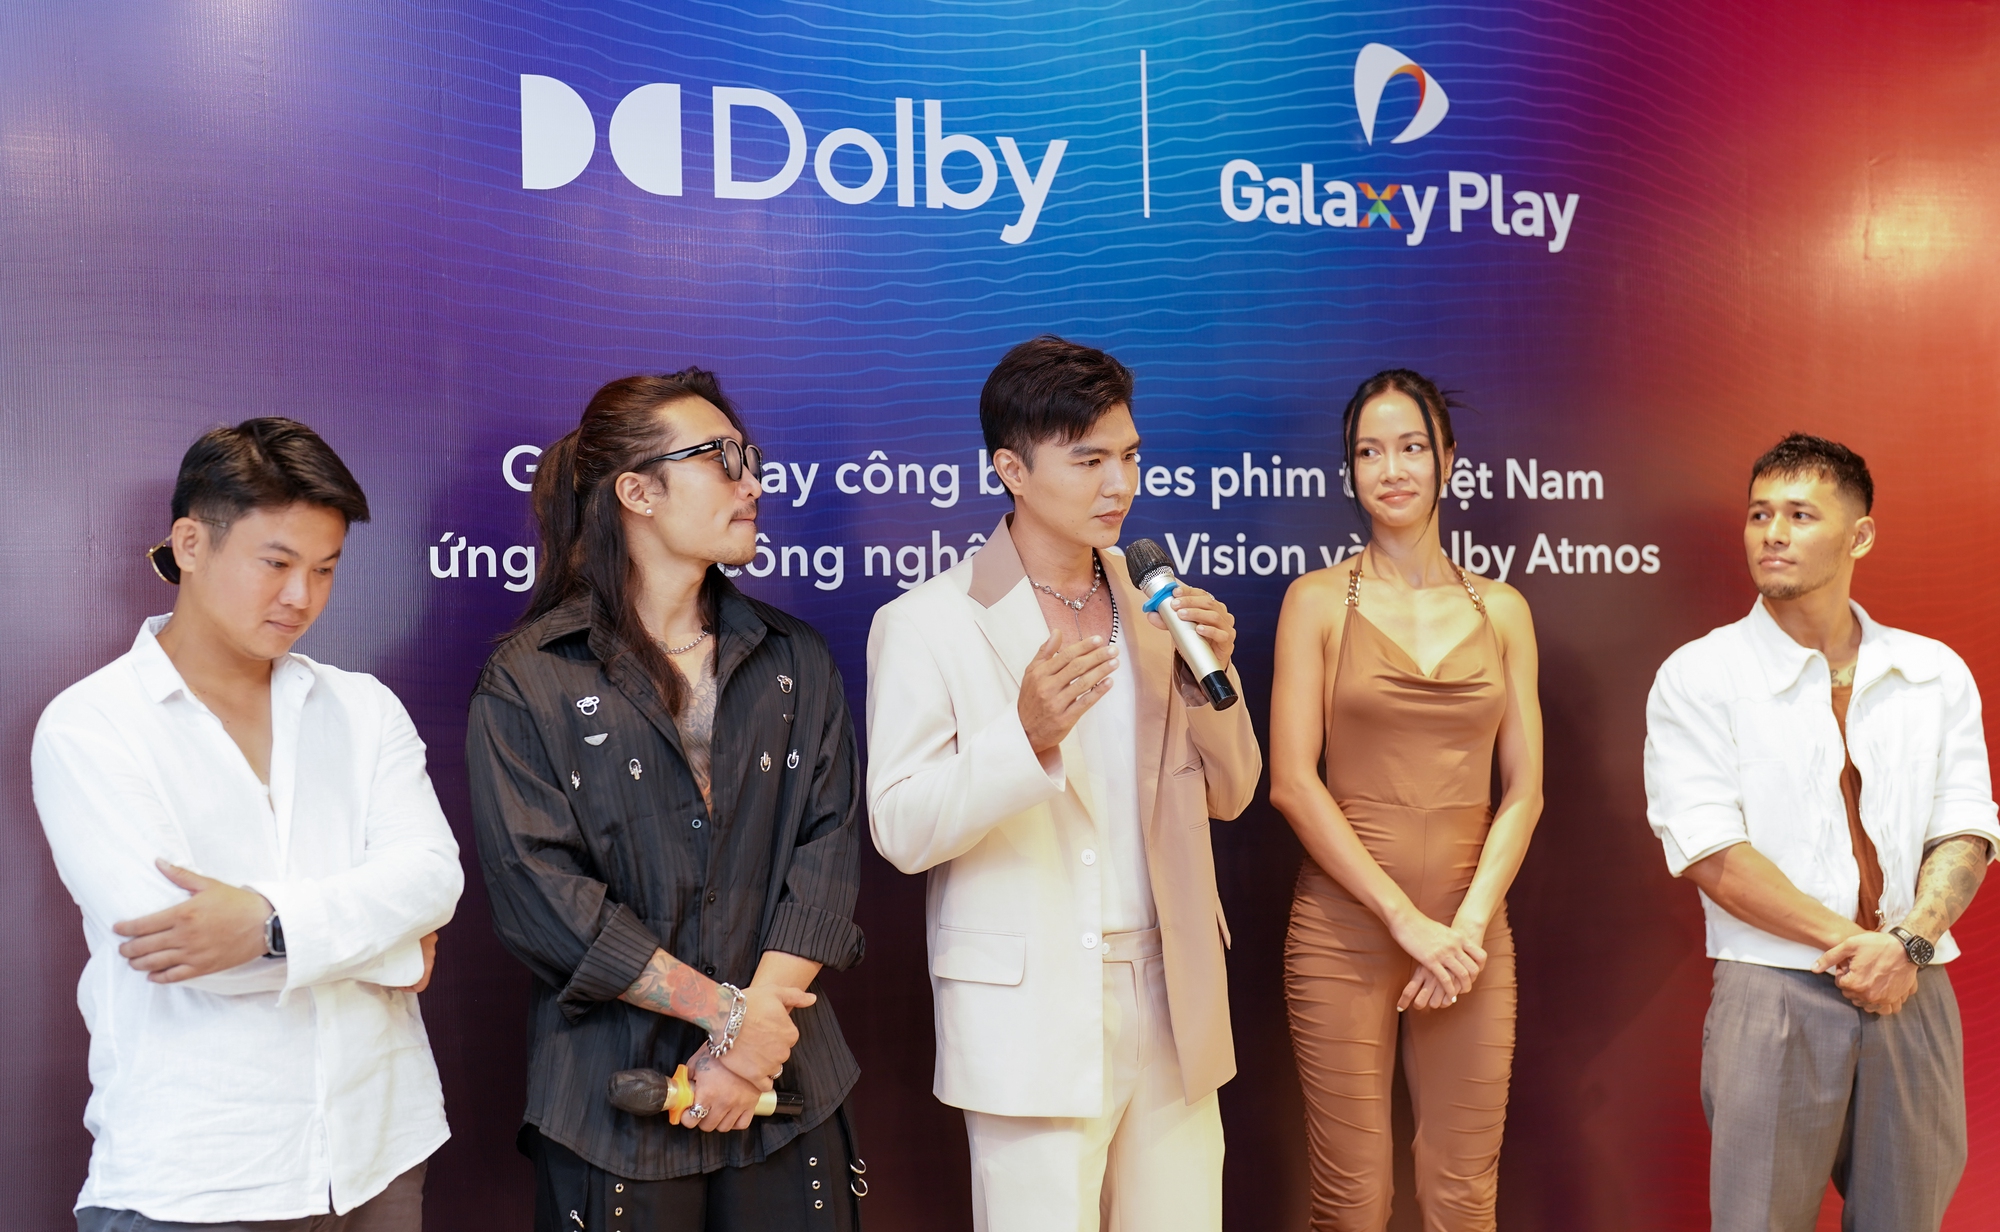 Galaxy Play ra mắt series phim ứng dụng công nghệ Dolby Vision và Dolby Atmos - Ảnh 1.